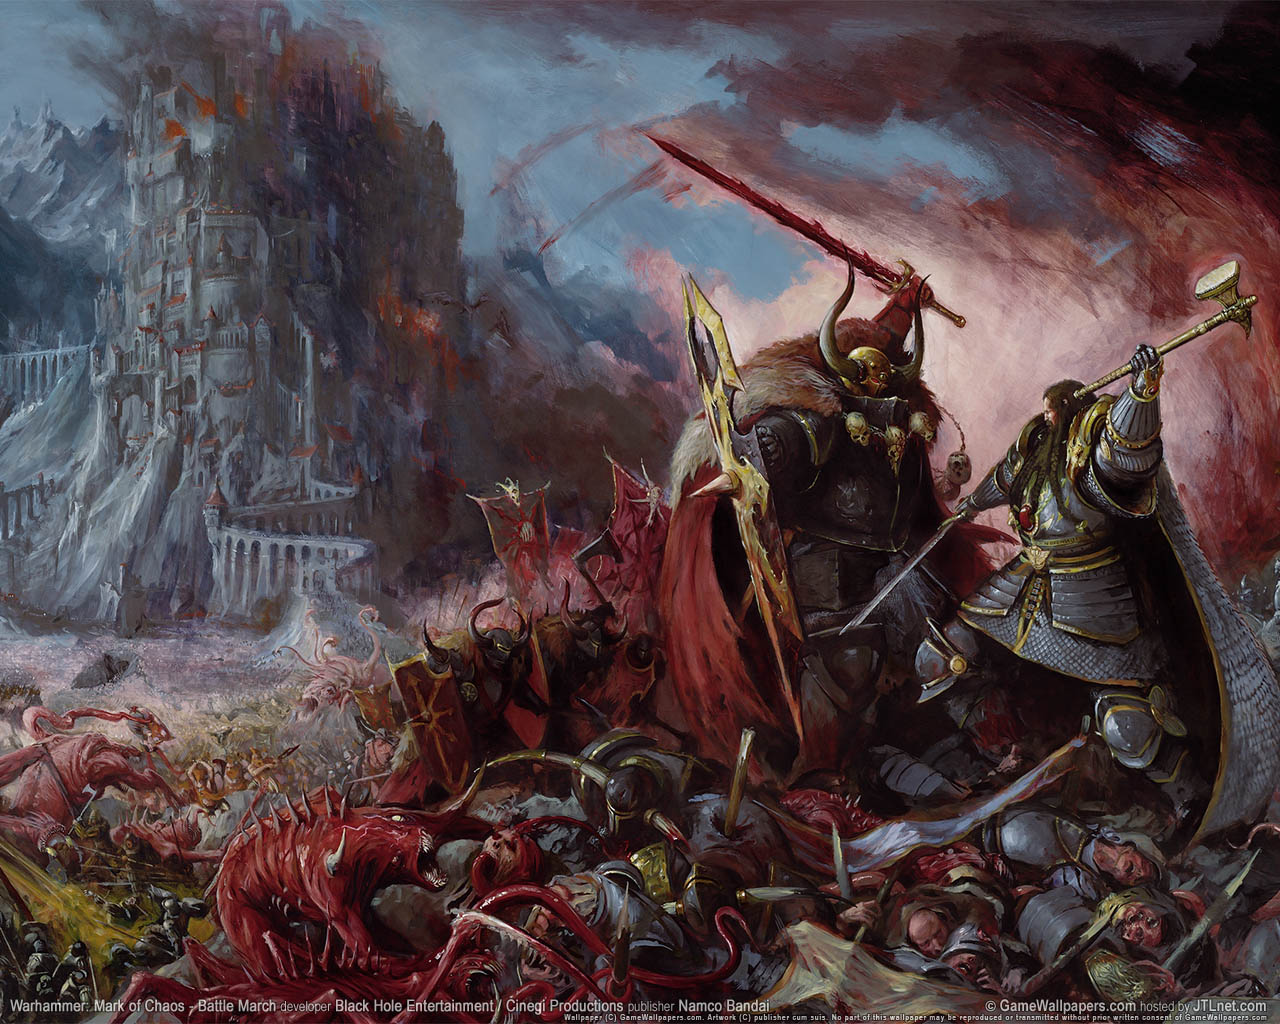 Warhammer: Mark of Chaos - Battle March fond d'cran 02 1280x1024